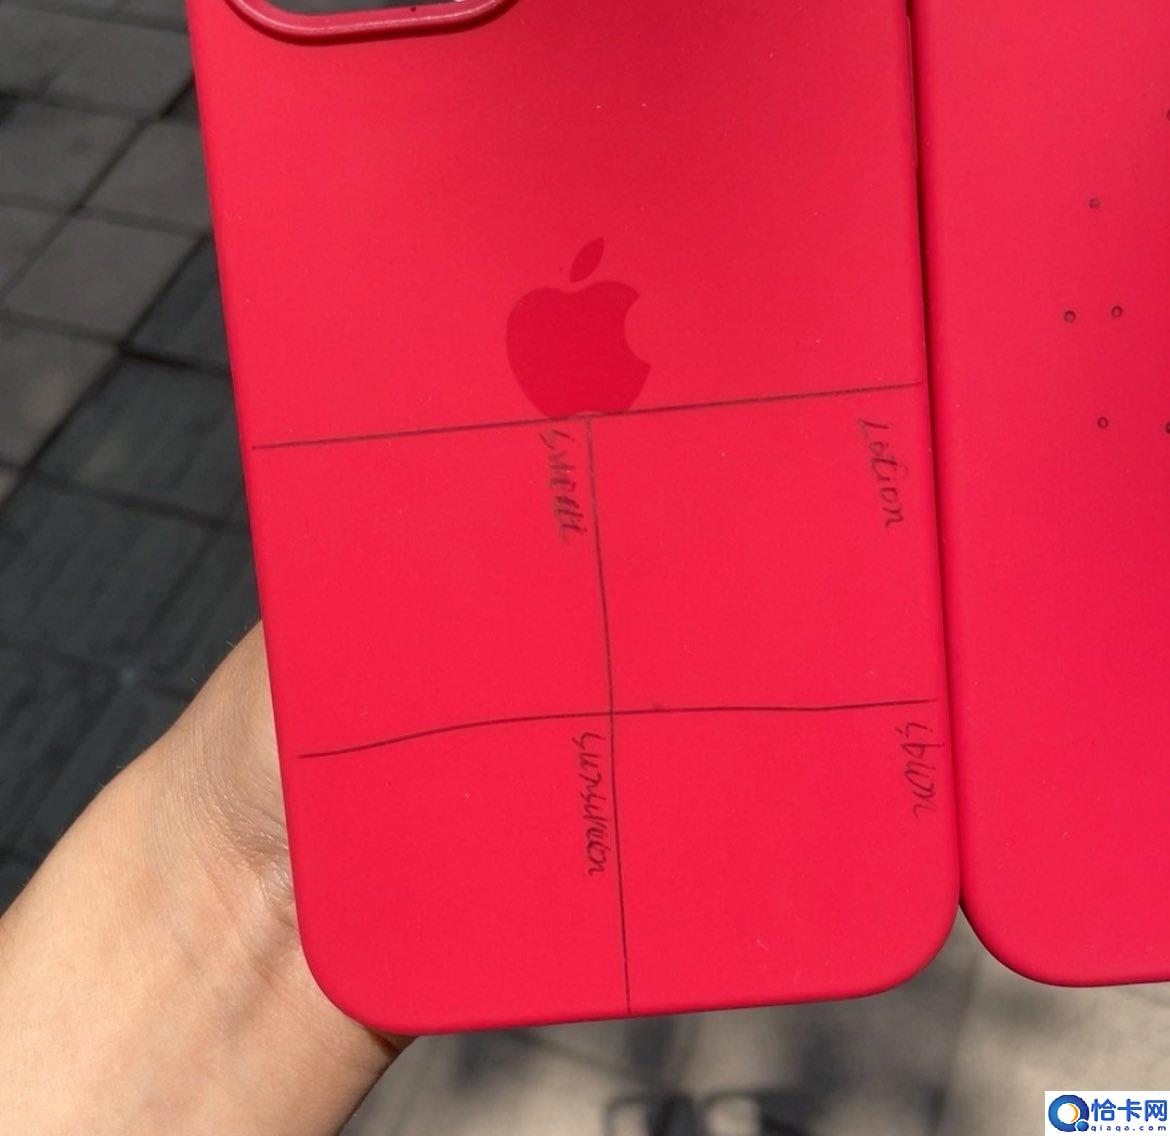 苹果 iPhone 12 用于强度测试的硅胶保护壳曝光